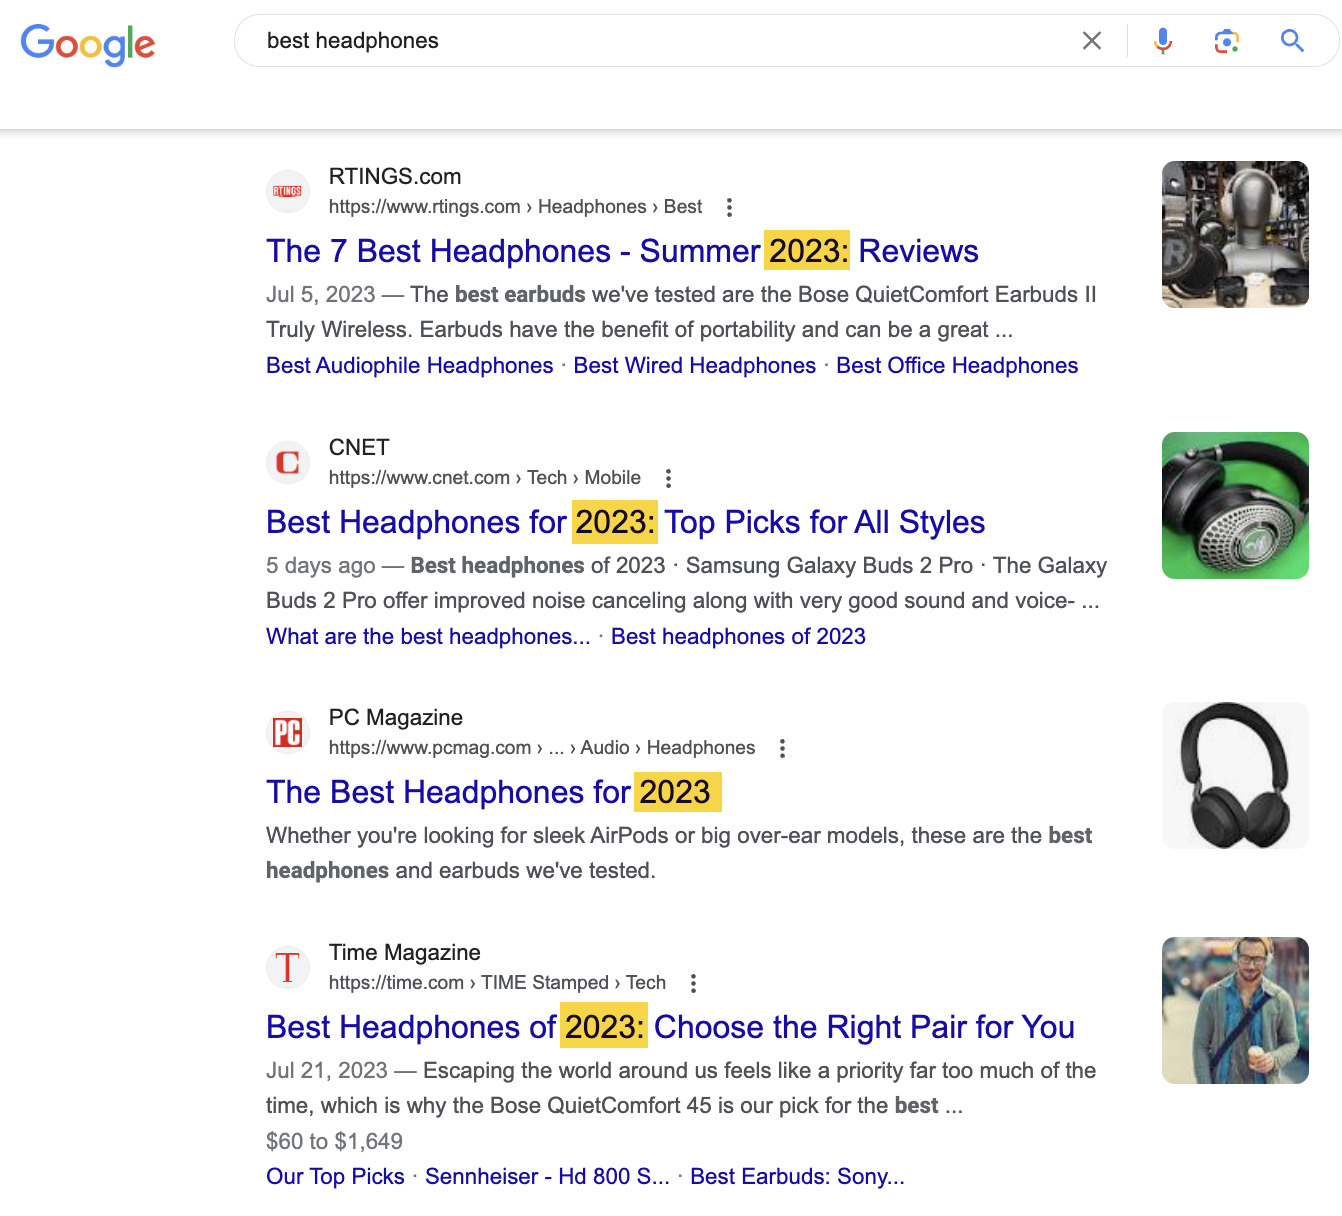 Google SERP for "best headphones"